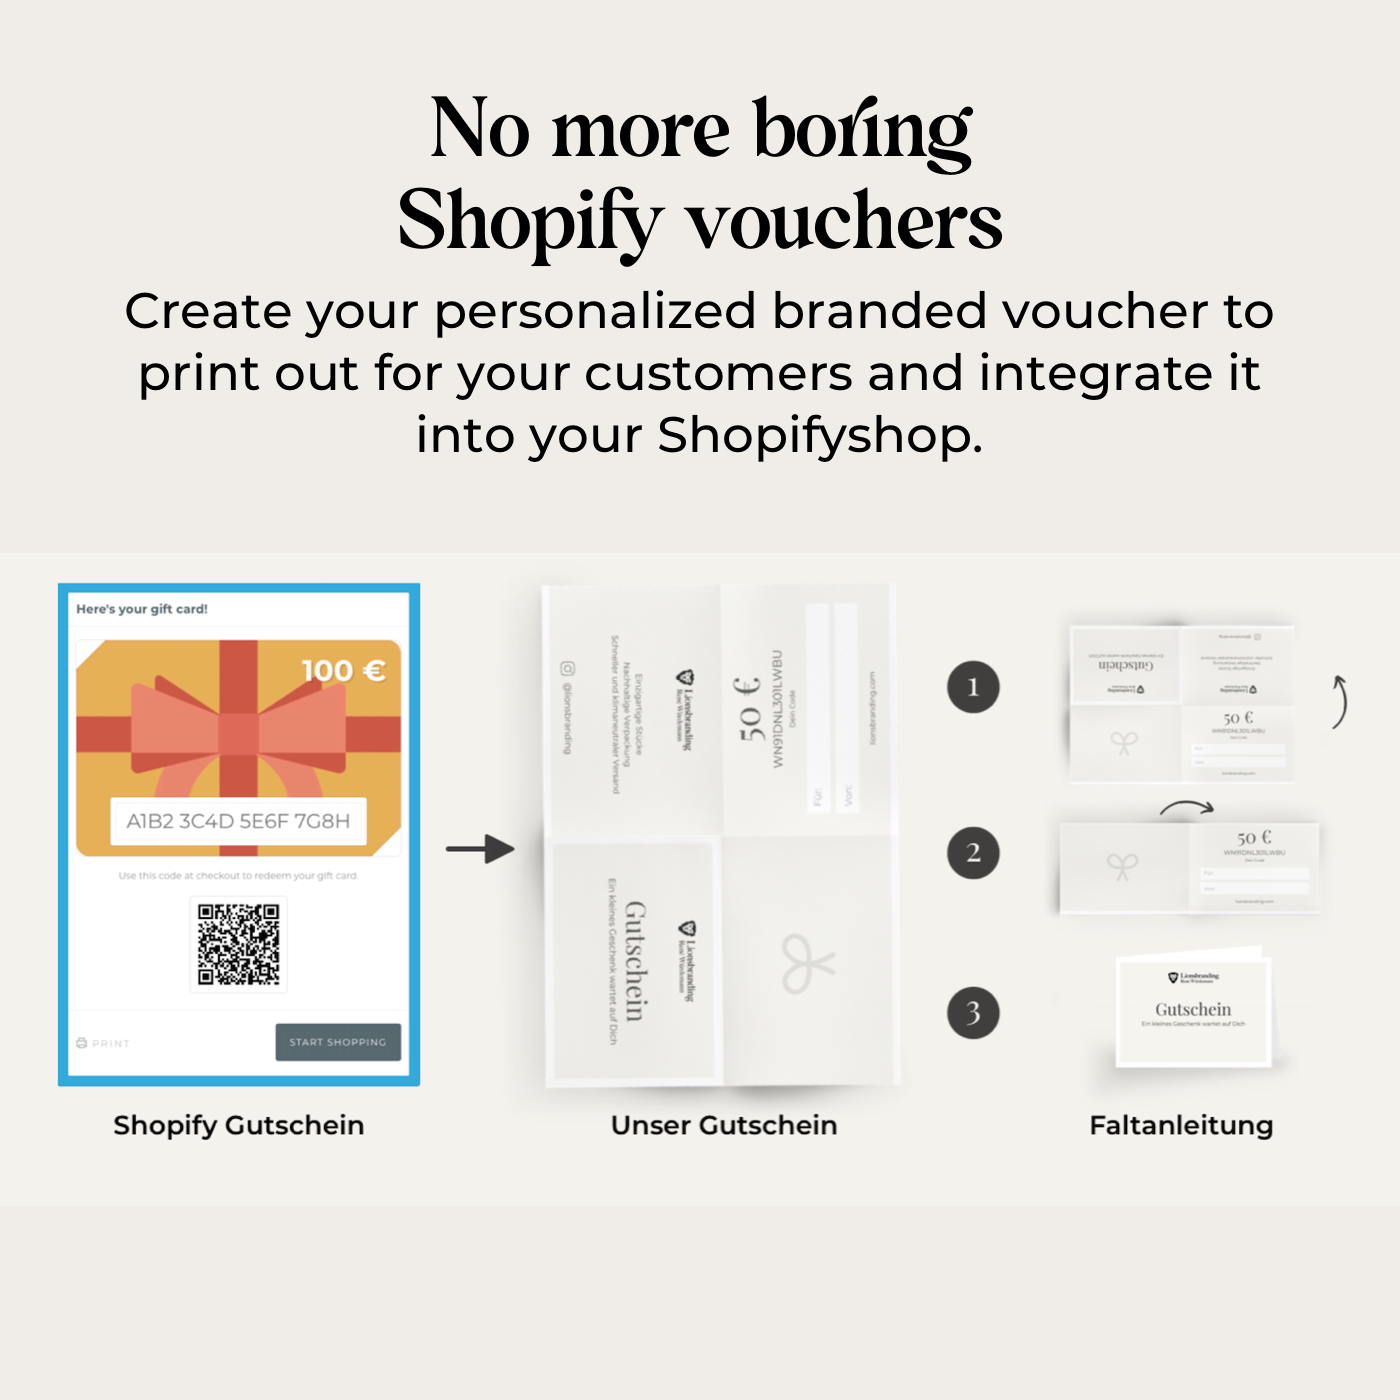 Shopify Gutschein Template